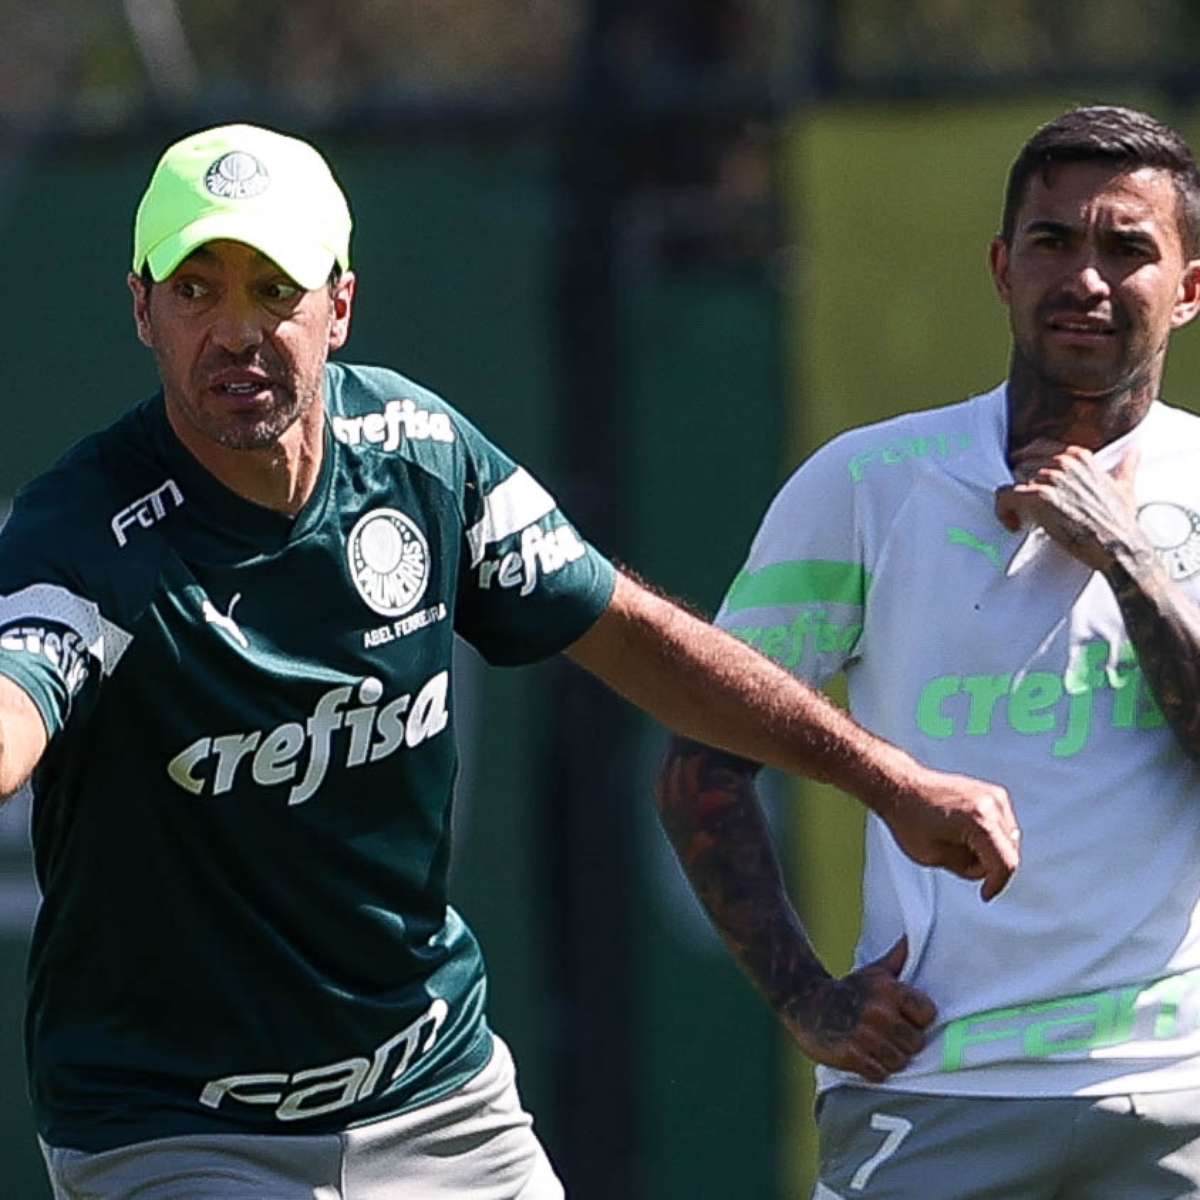 Dérbi vale 'perfeição' em torneios para o Palmeiras, que disputa todos os  jogos possíveis desde 2020